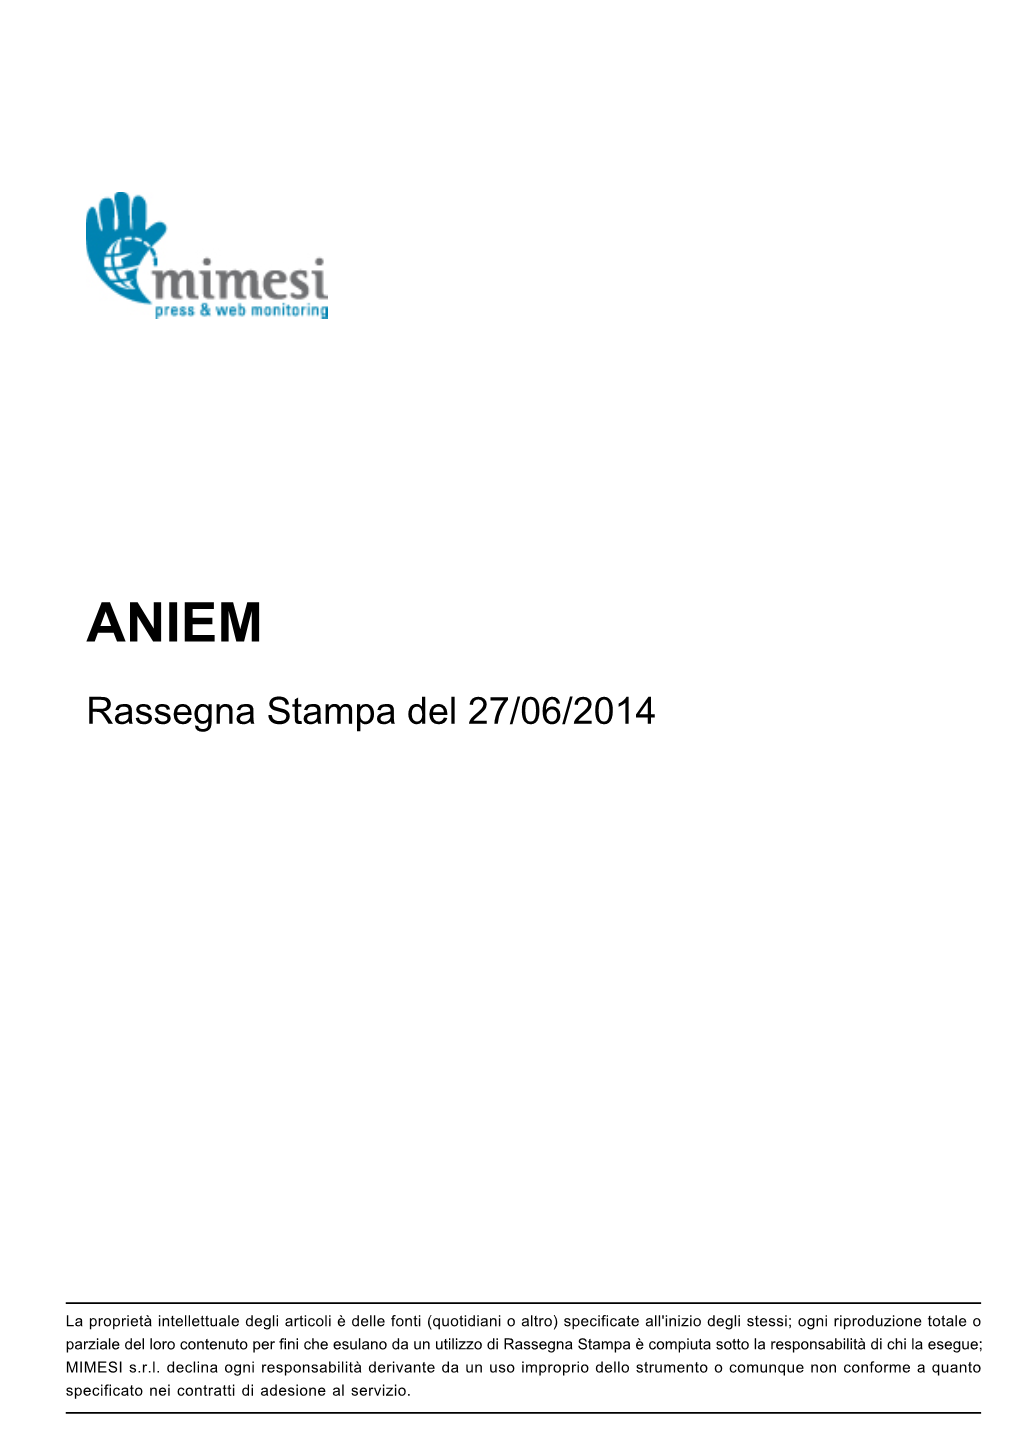 Rassegna Stampa Del 27/06/2014